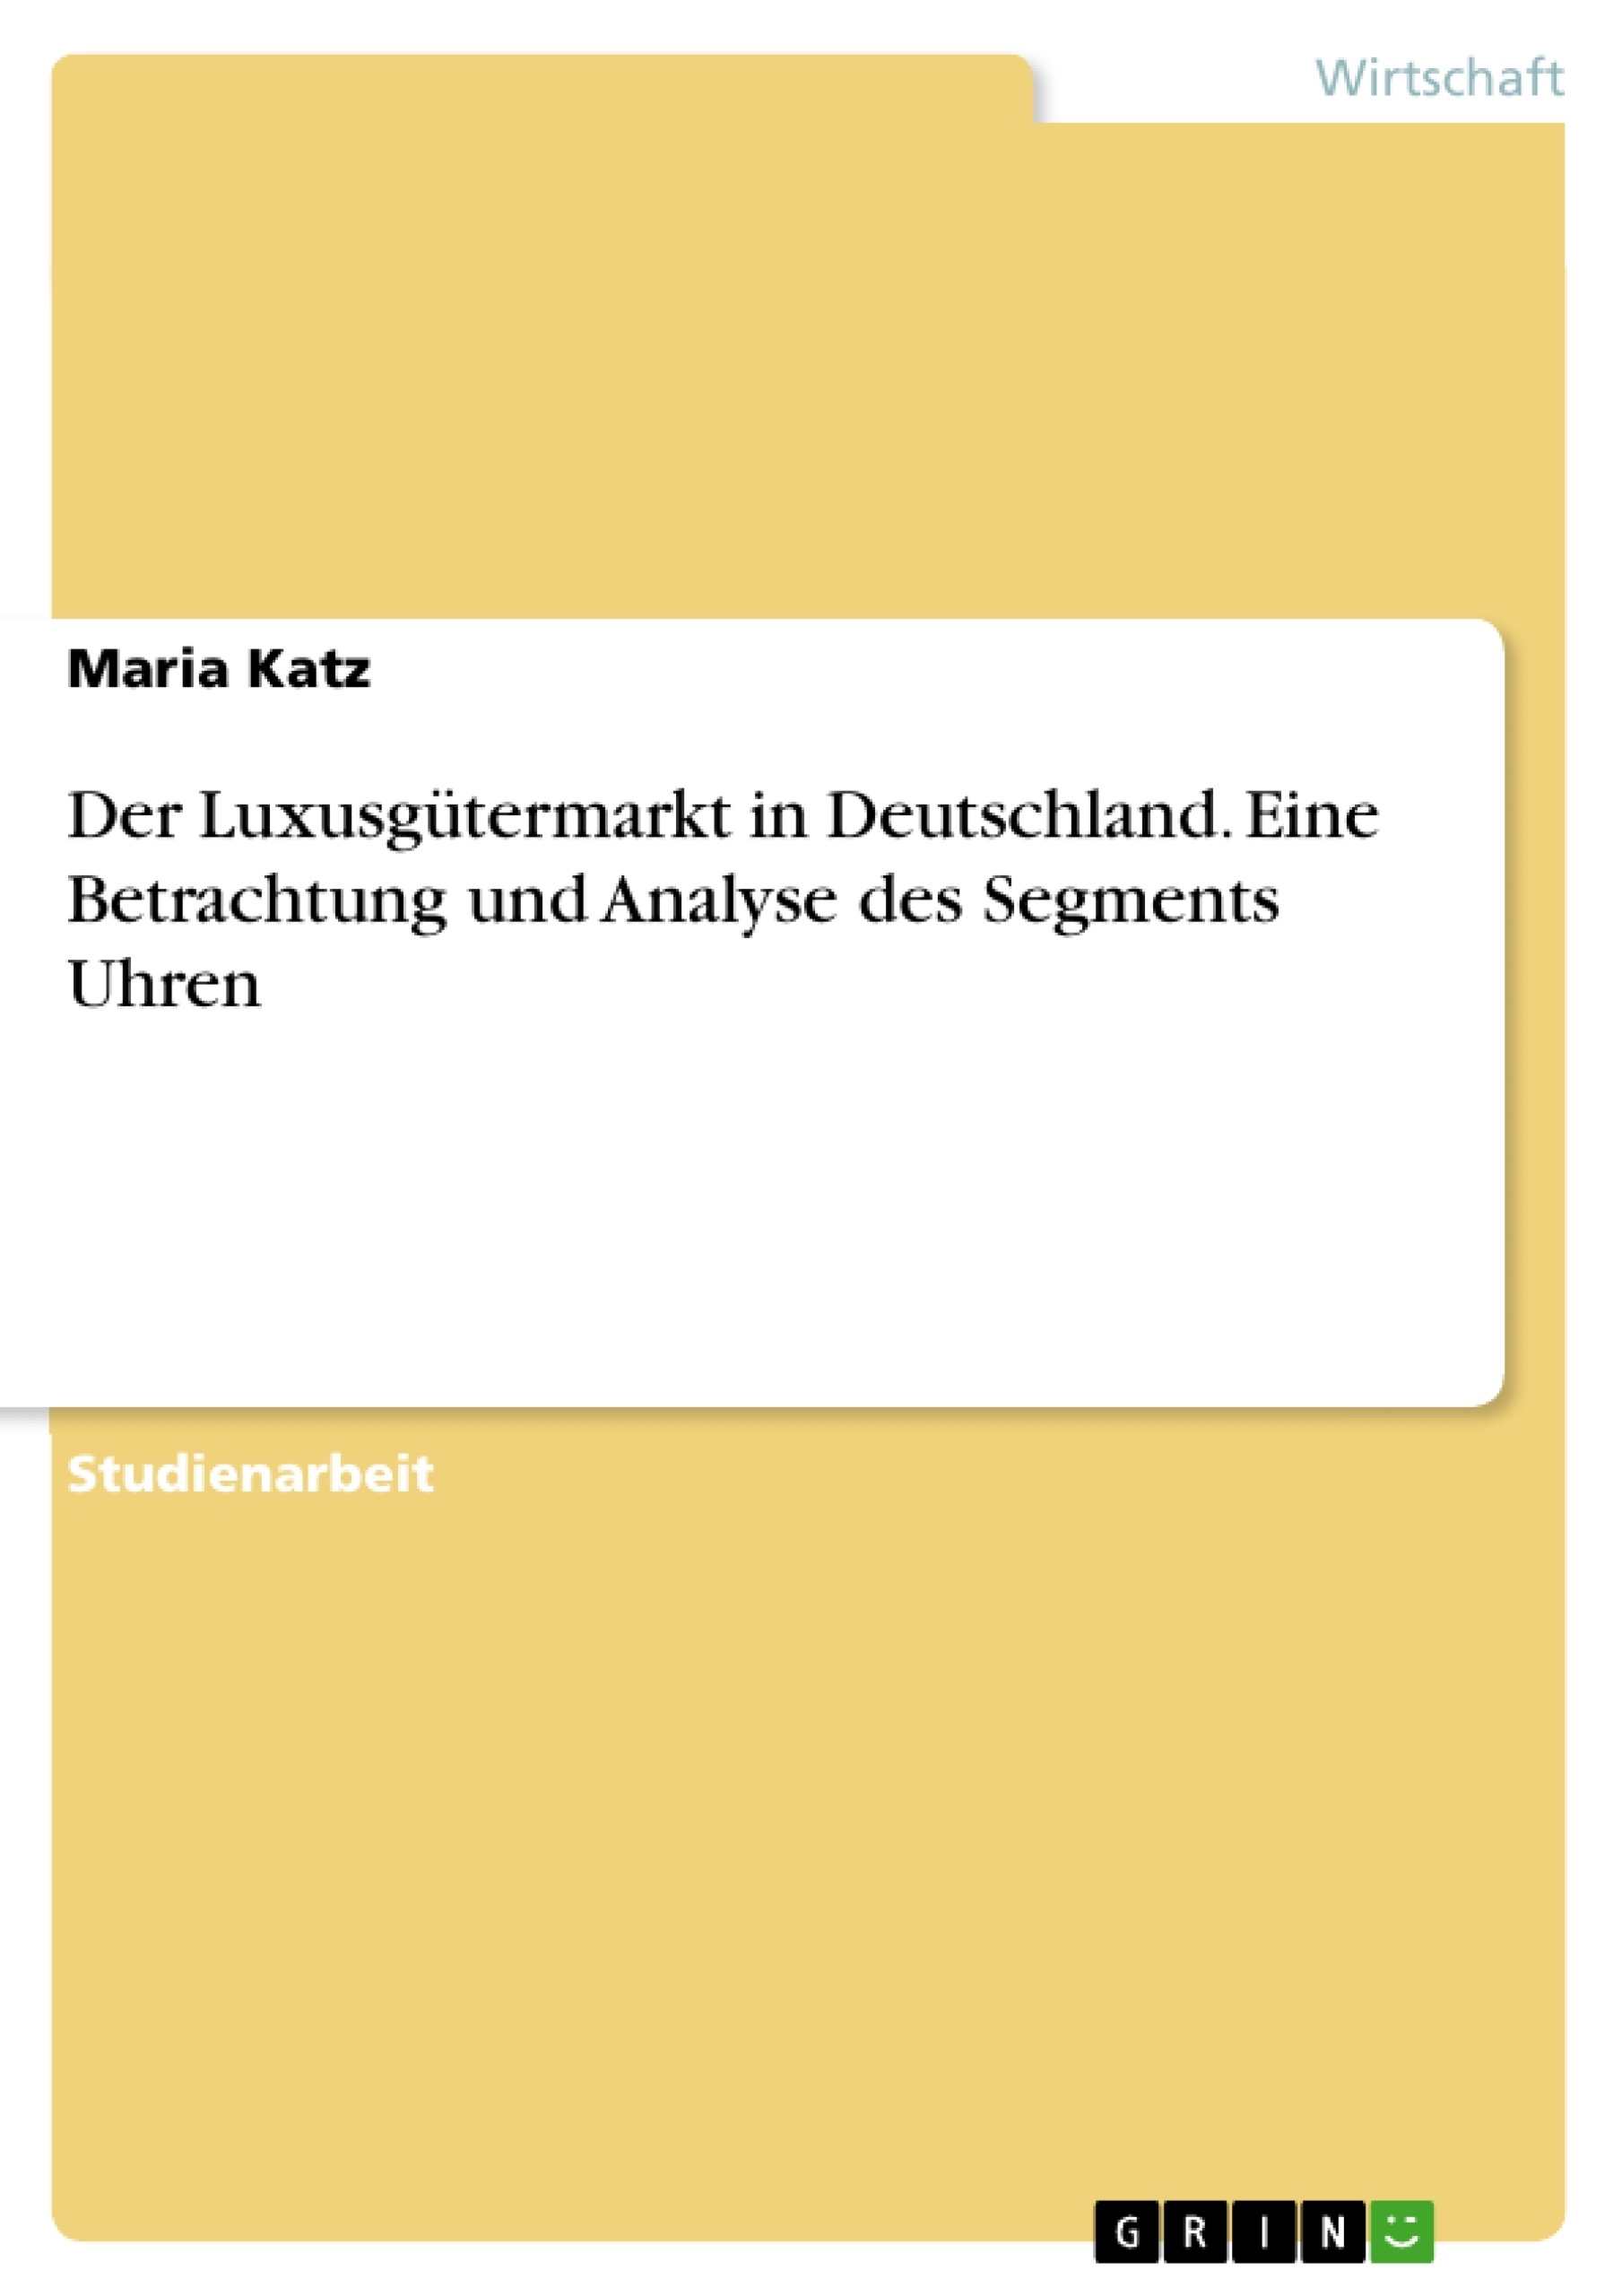 Title: Der Luxusgütermarkt in Deutschland. Eine Betrachtung und Analyse des Segments Uhren